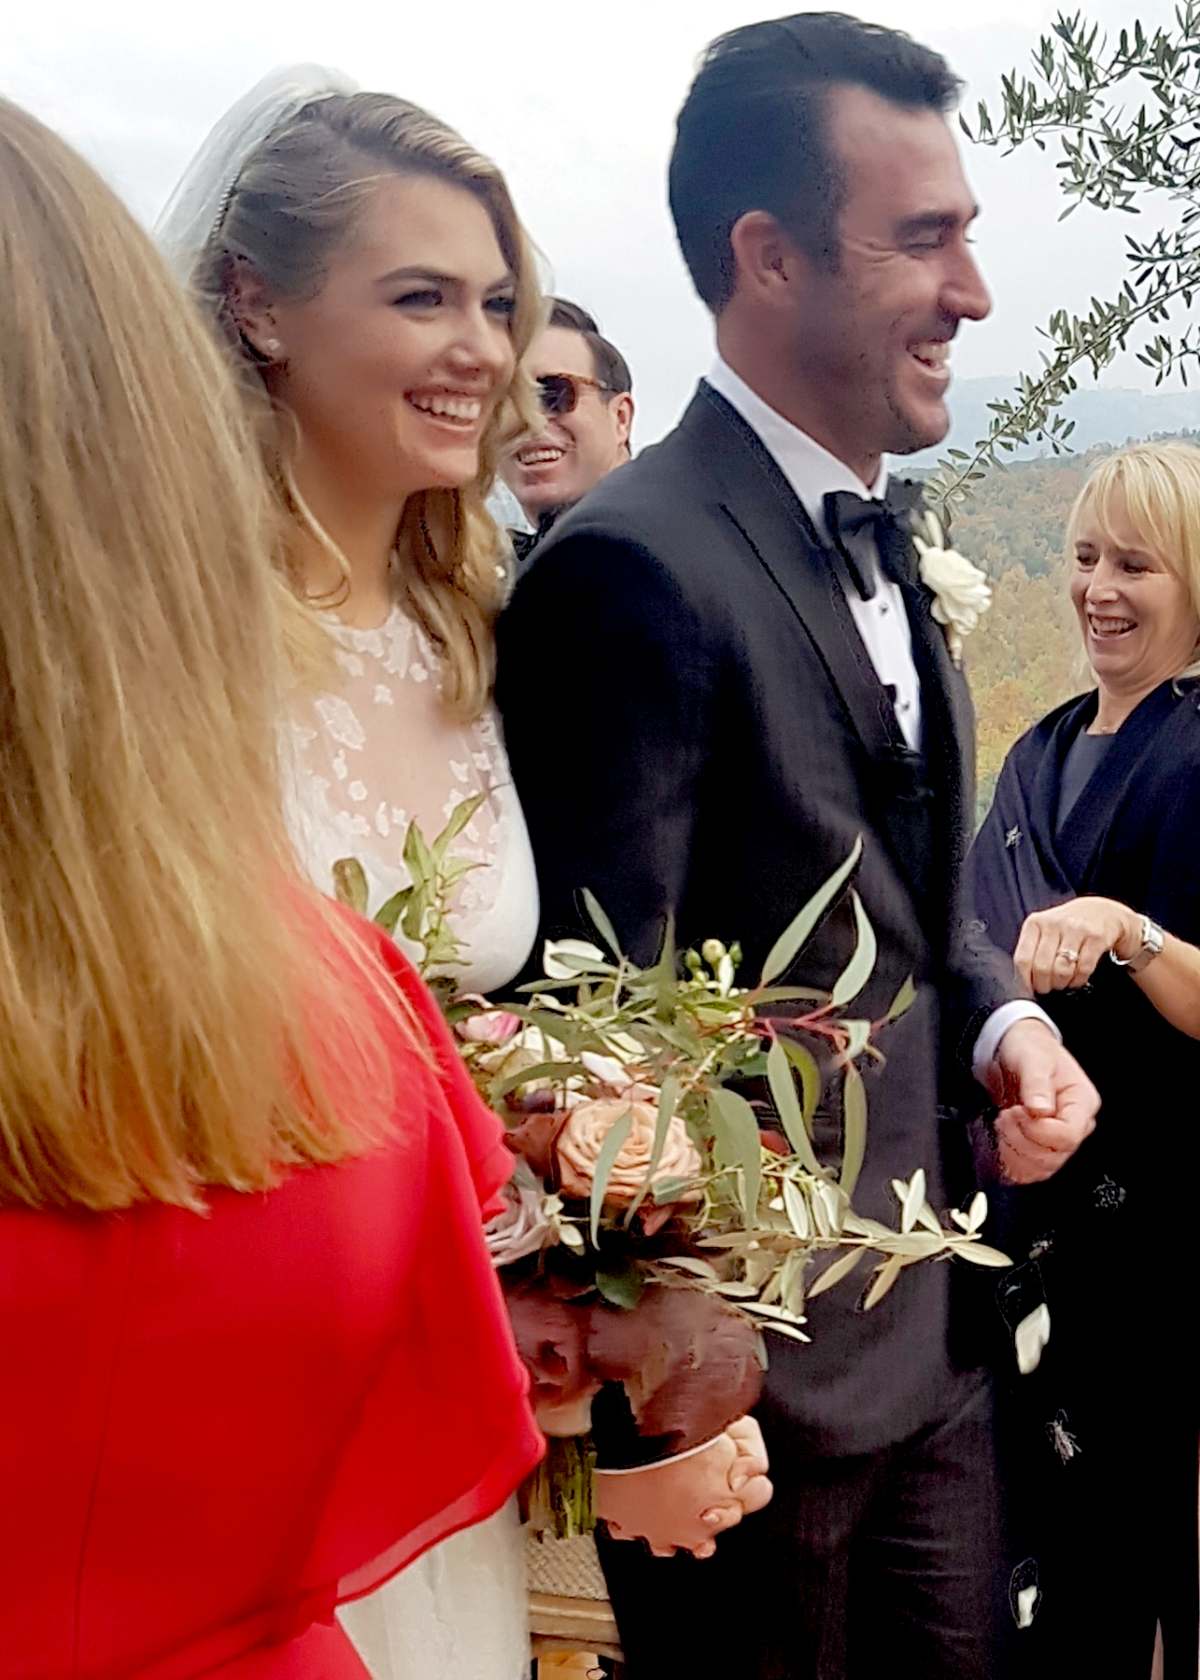 The Tuscan Wedding of Kate Upton & Justin Verlander